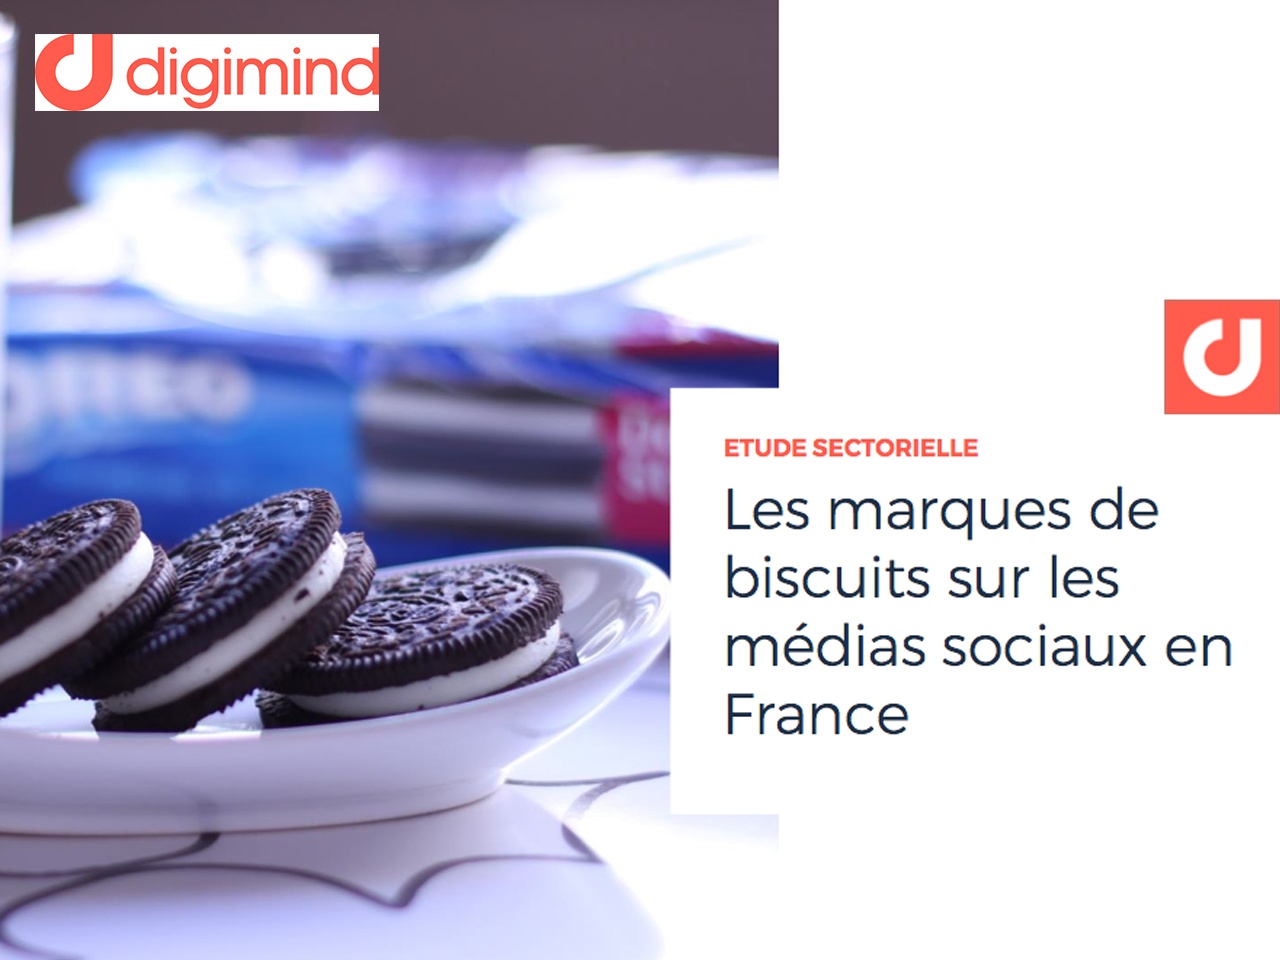 Digimind étudie les marques de biscuits sur les médias sociaux en France